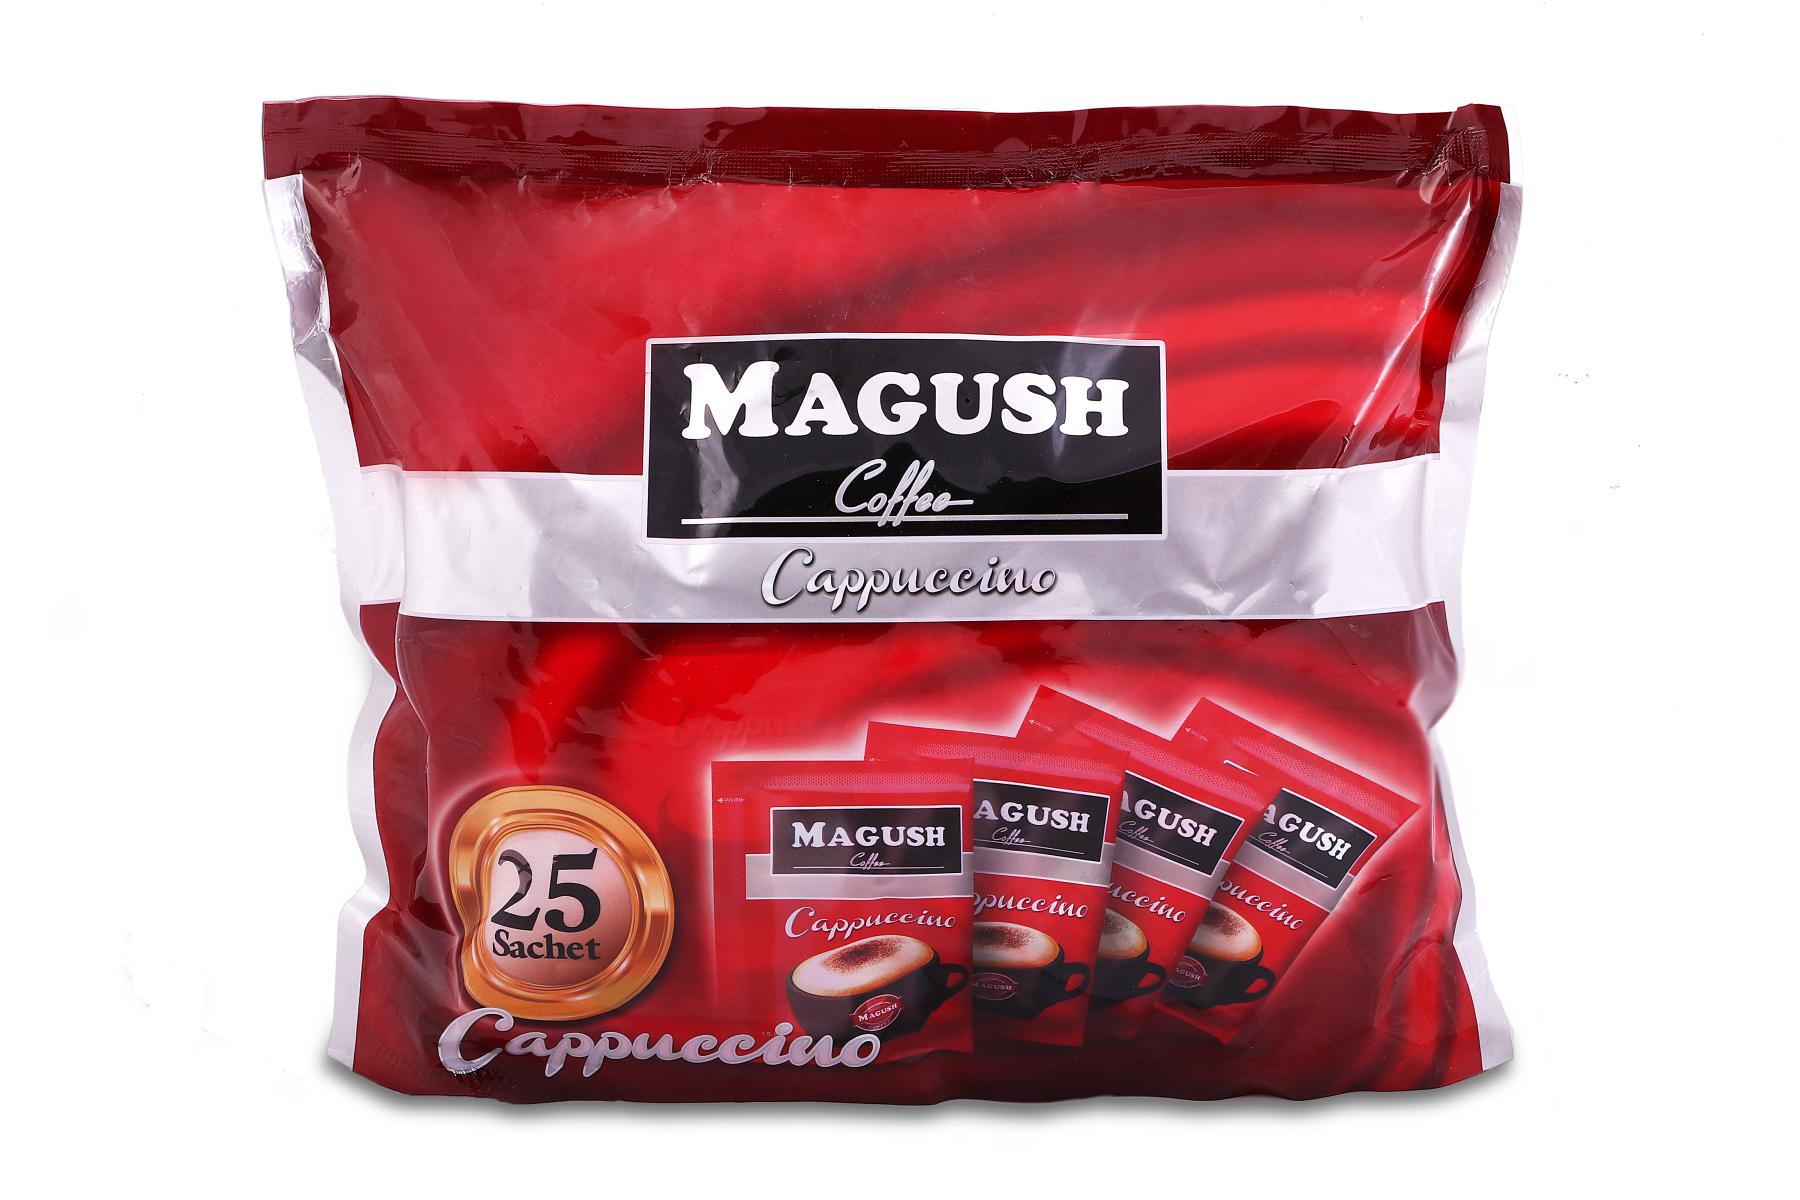 کاپوچینو ماگوش ۲۵ عددی همراه با گرانول شکلات و تخفیف ویژه